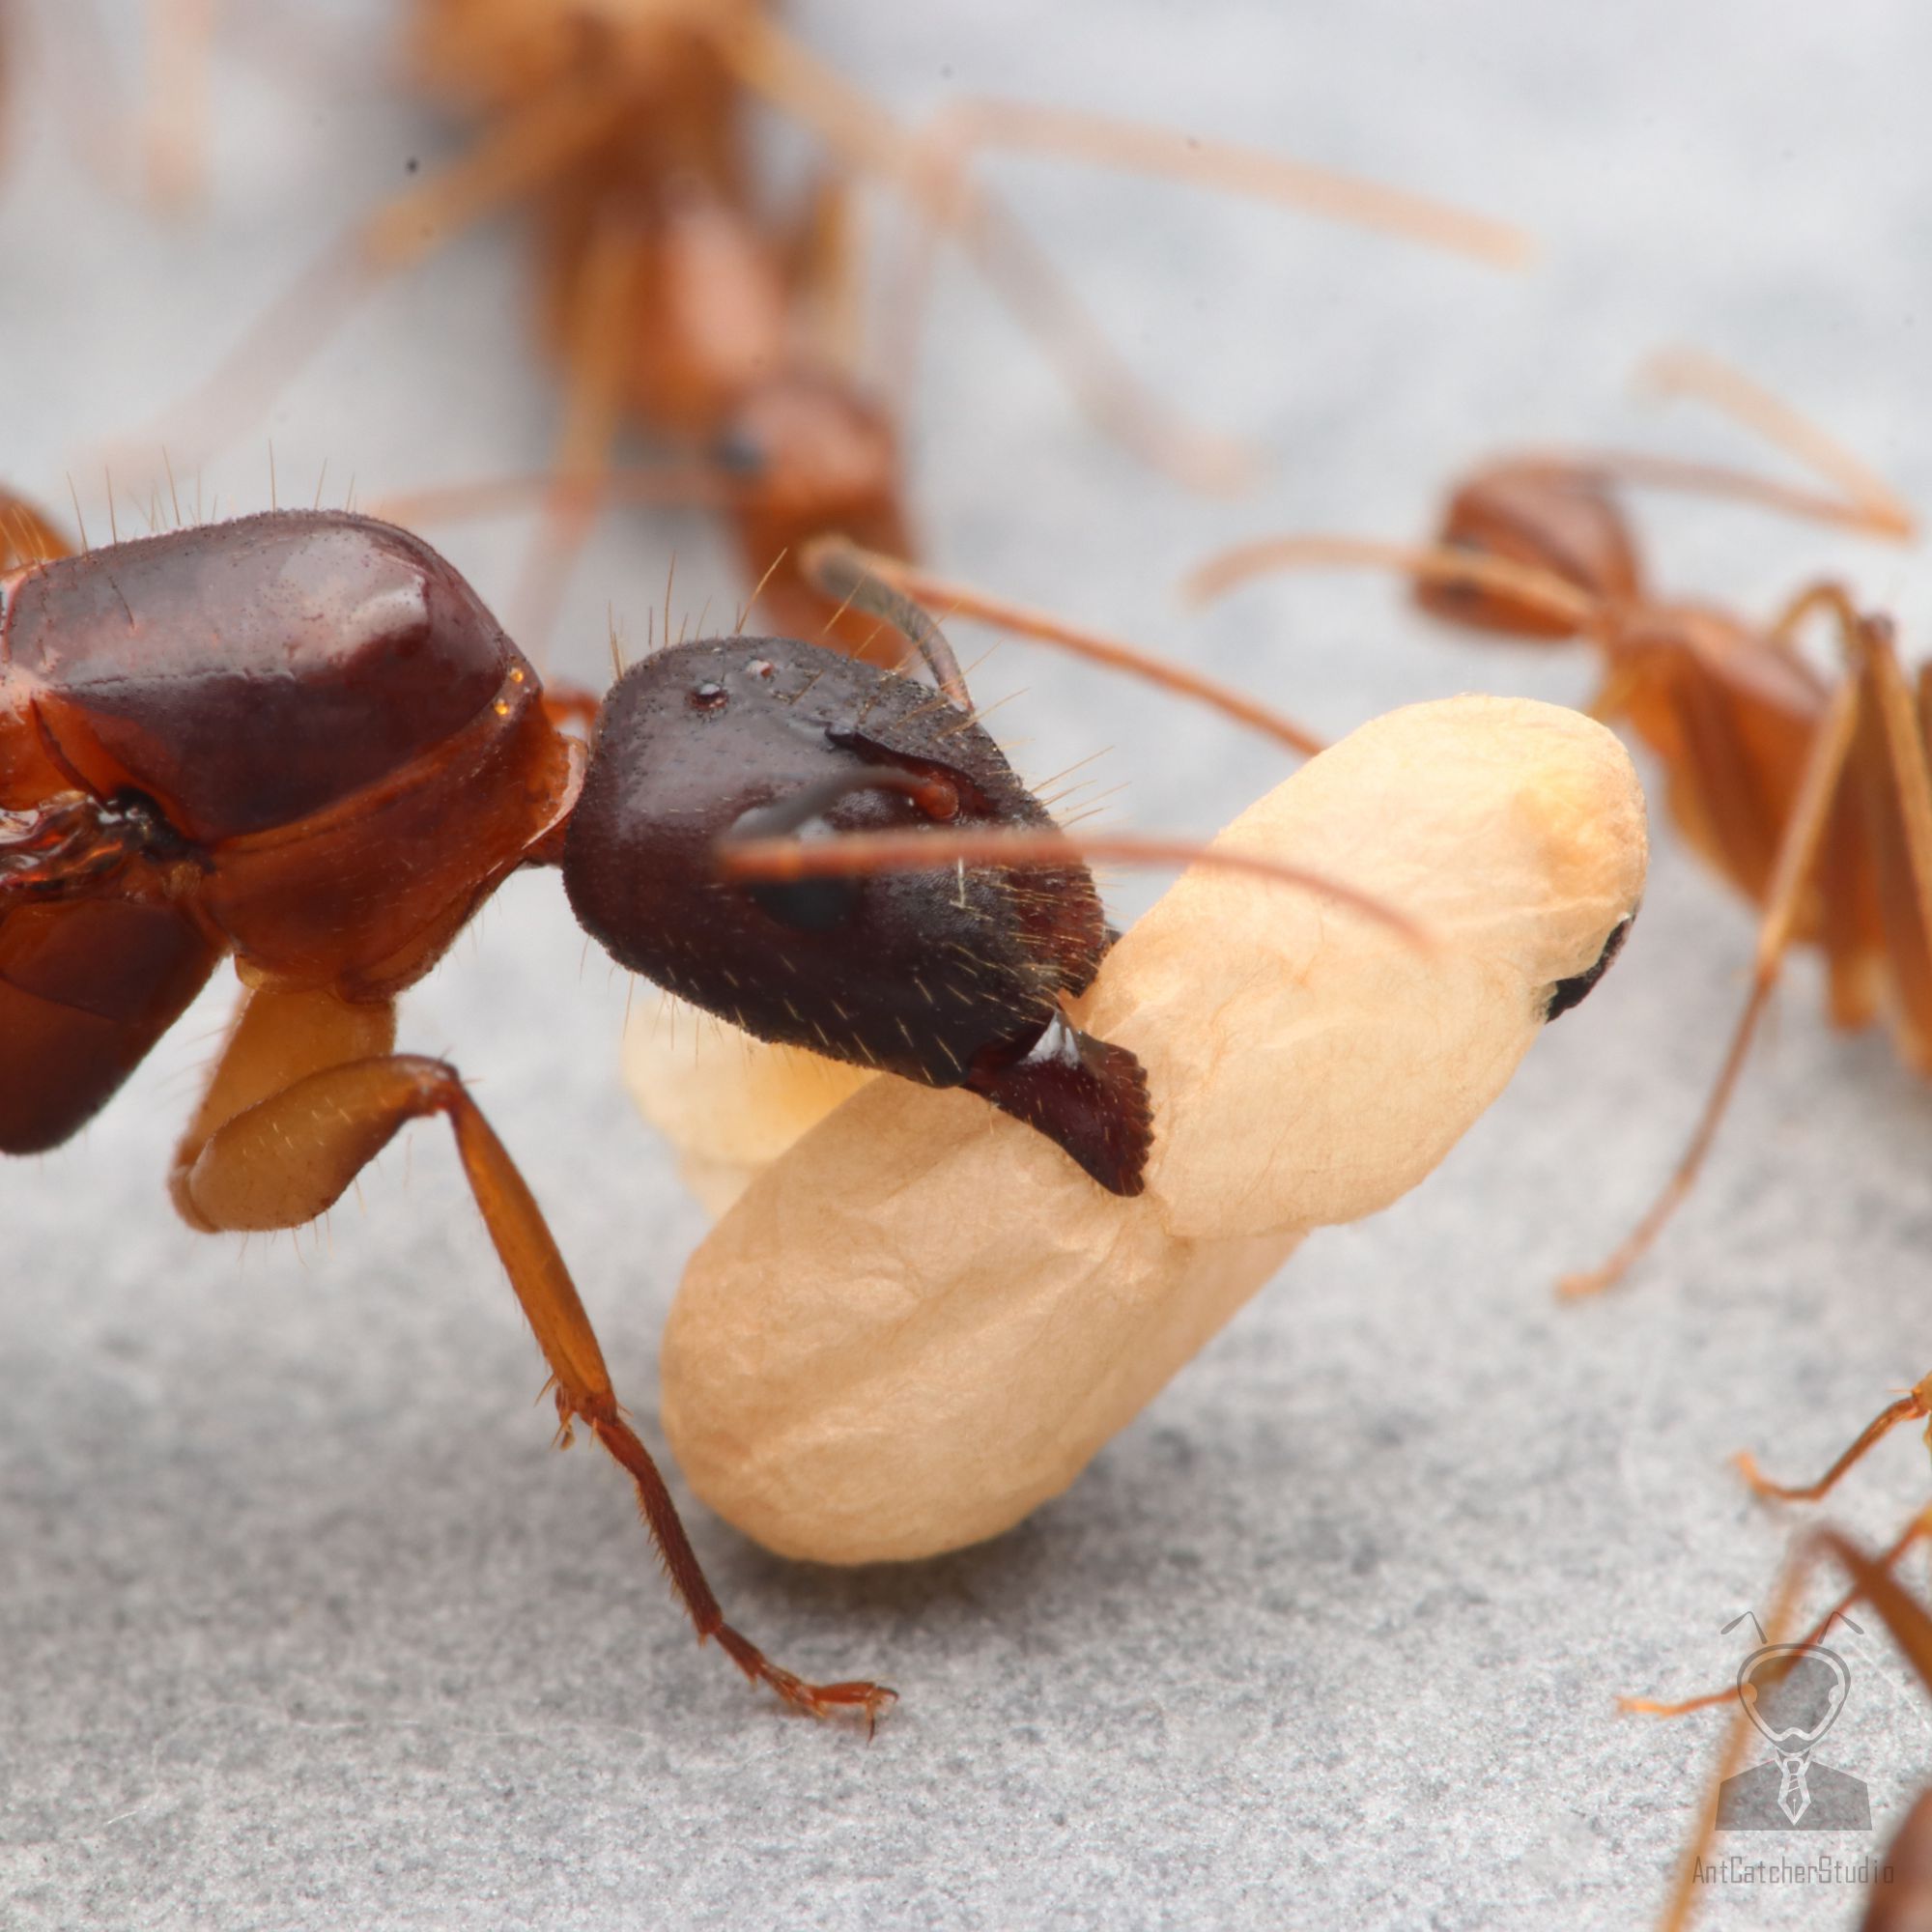 焦糖色的體色類似深色版的甜蜜巨山蟻，價格又便宜許多，素有「窮人的甜蜜」的稱號